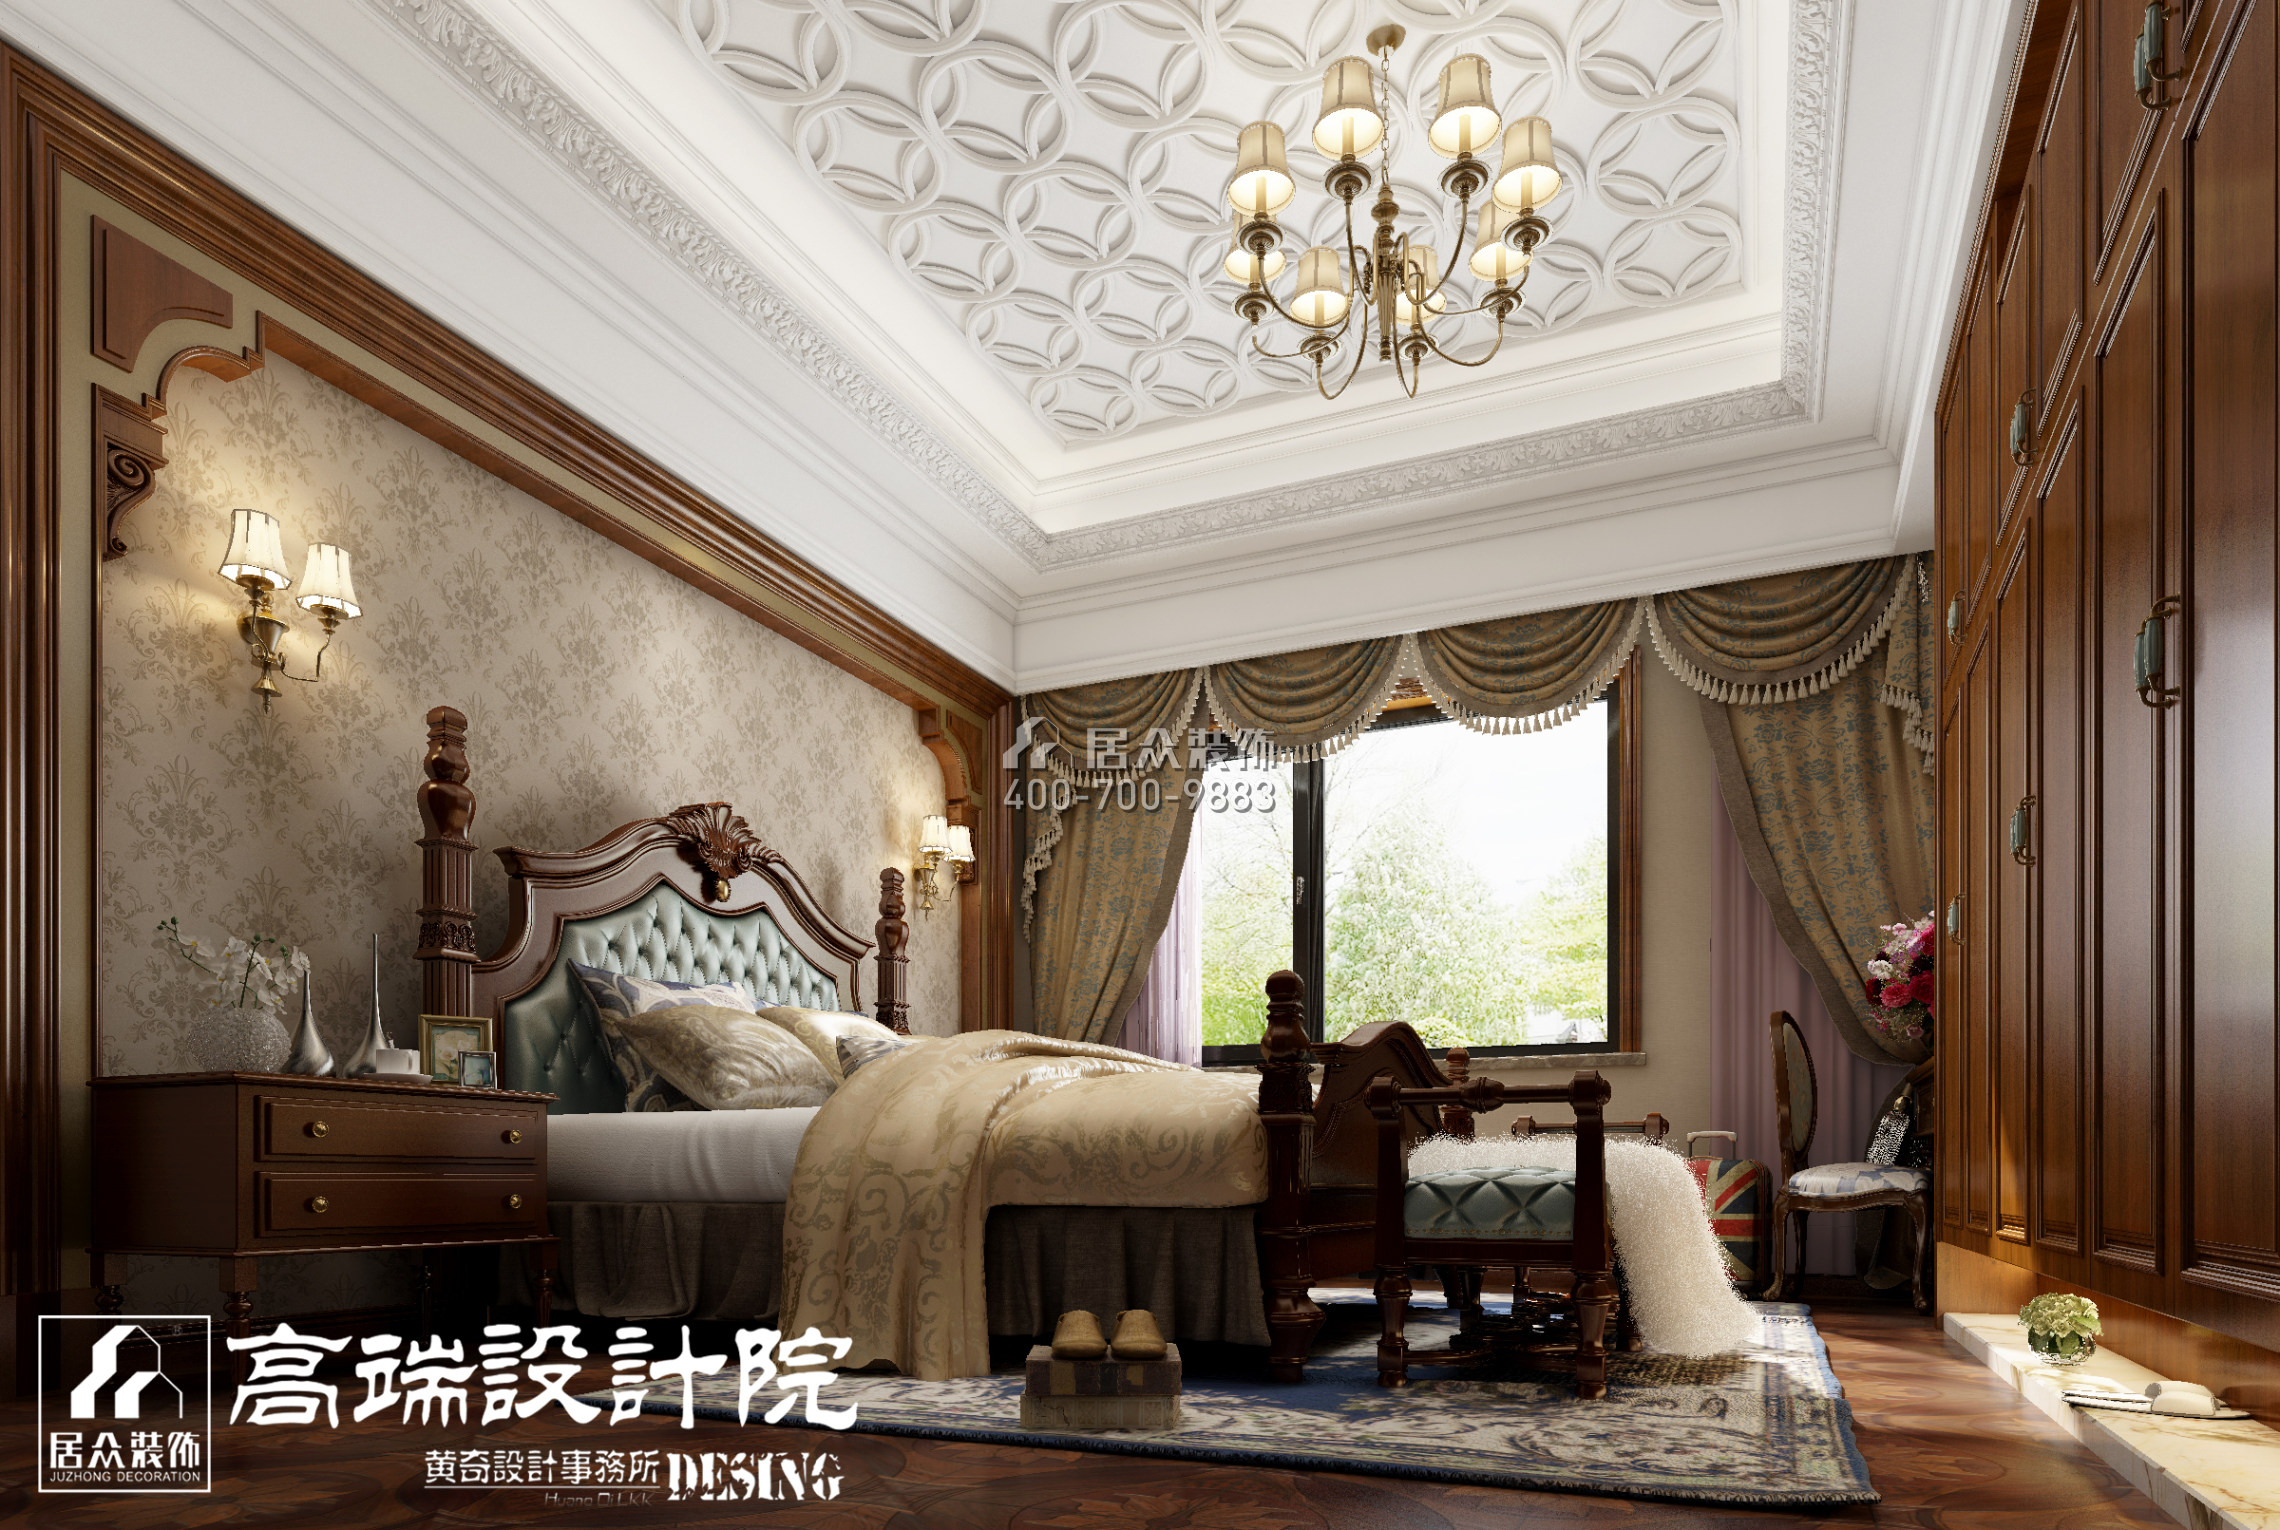 龙湖湘风原著450平方米欧式风格别墅户型卧室装修效果图